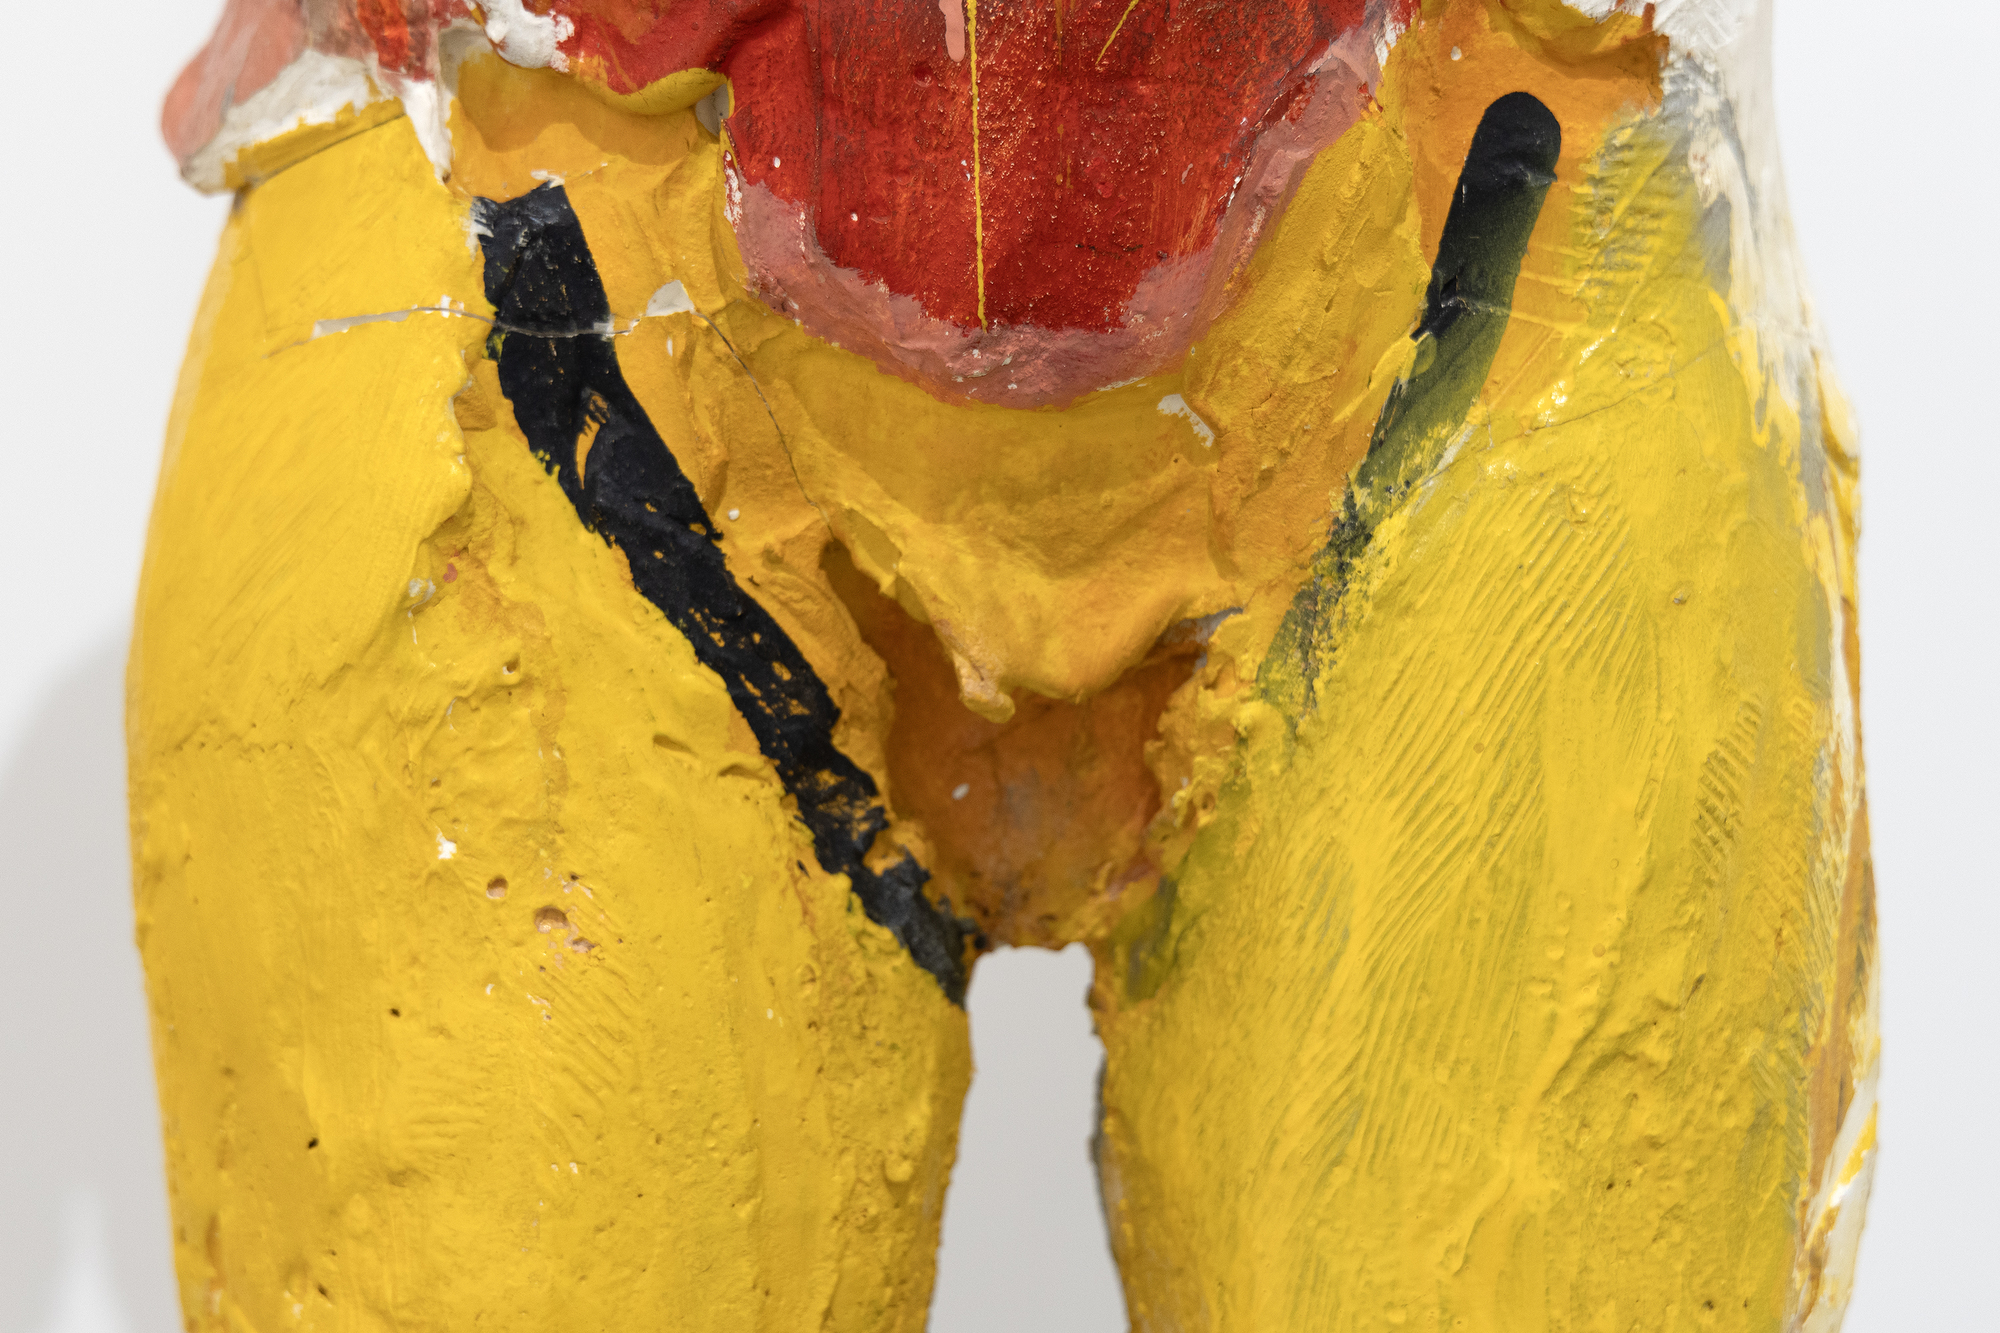 マヌエル・ネリの初期のペーパー・マシェの作品は、彫刻技法の先駆けであり、彼の彫刻の絵画へのアプローチは、色彩と形態の表現の可能性への深い関与を反映しています。『Hombre Colorado II』における色の選択と配置は、色の心理的・感情的な側面に対する彼の微妙な理解を反映した、特に本能的な反応を生み出します。1958年に構想され制作された『Hombre Colorado II』は、ネリと妻のジョーン・ブラウンが豊かな芸術的創造性の交流を行い、それぞれのスタイルとベイエリアの具象運動の進化に大きく貢献した時代を反映しています。